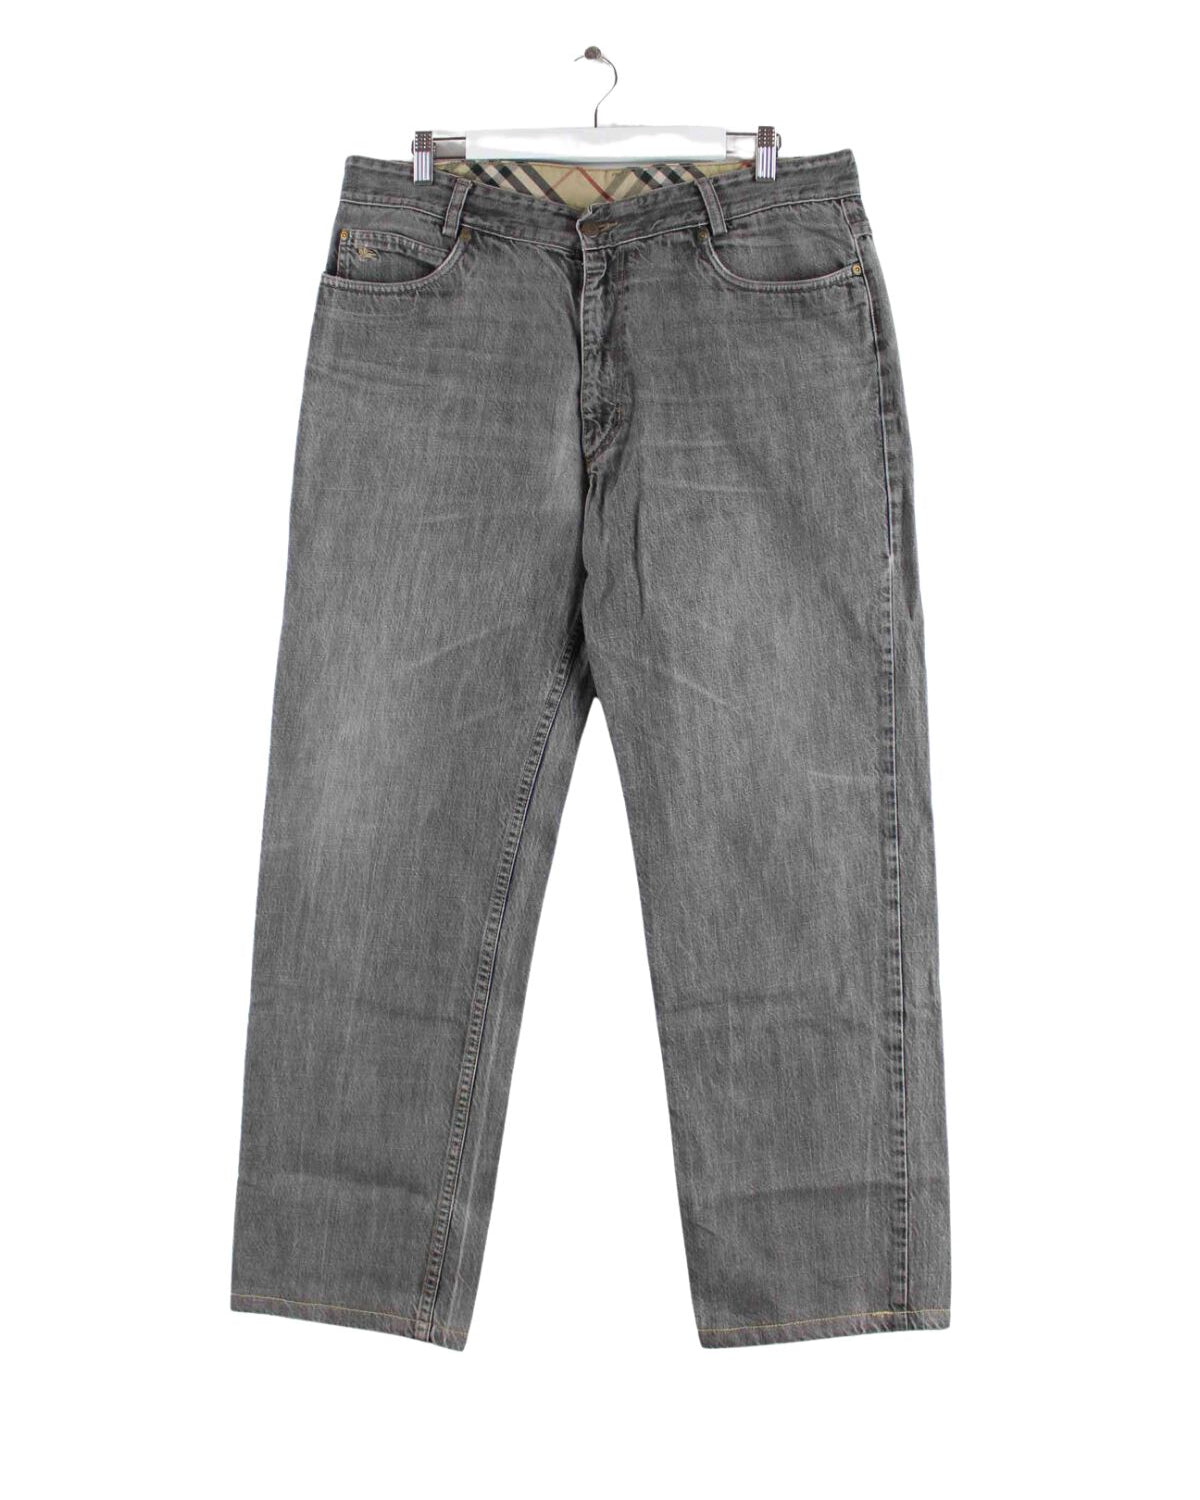 Burberry Jeans Grau W35 L30 (front image)